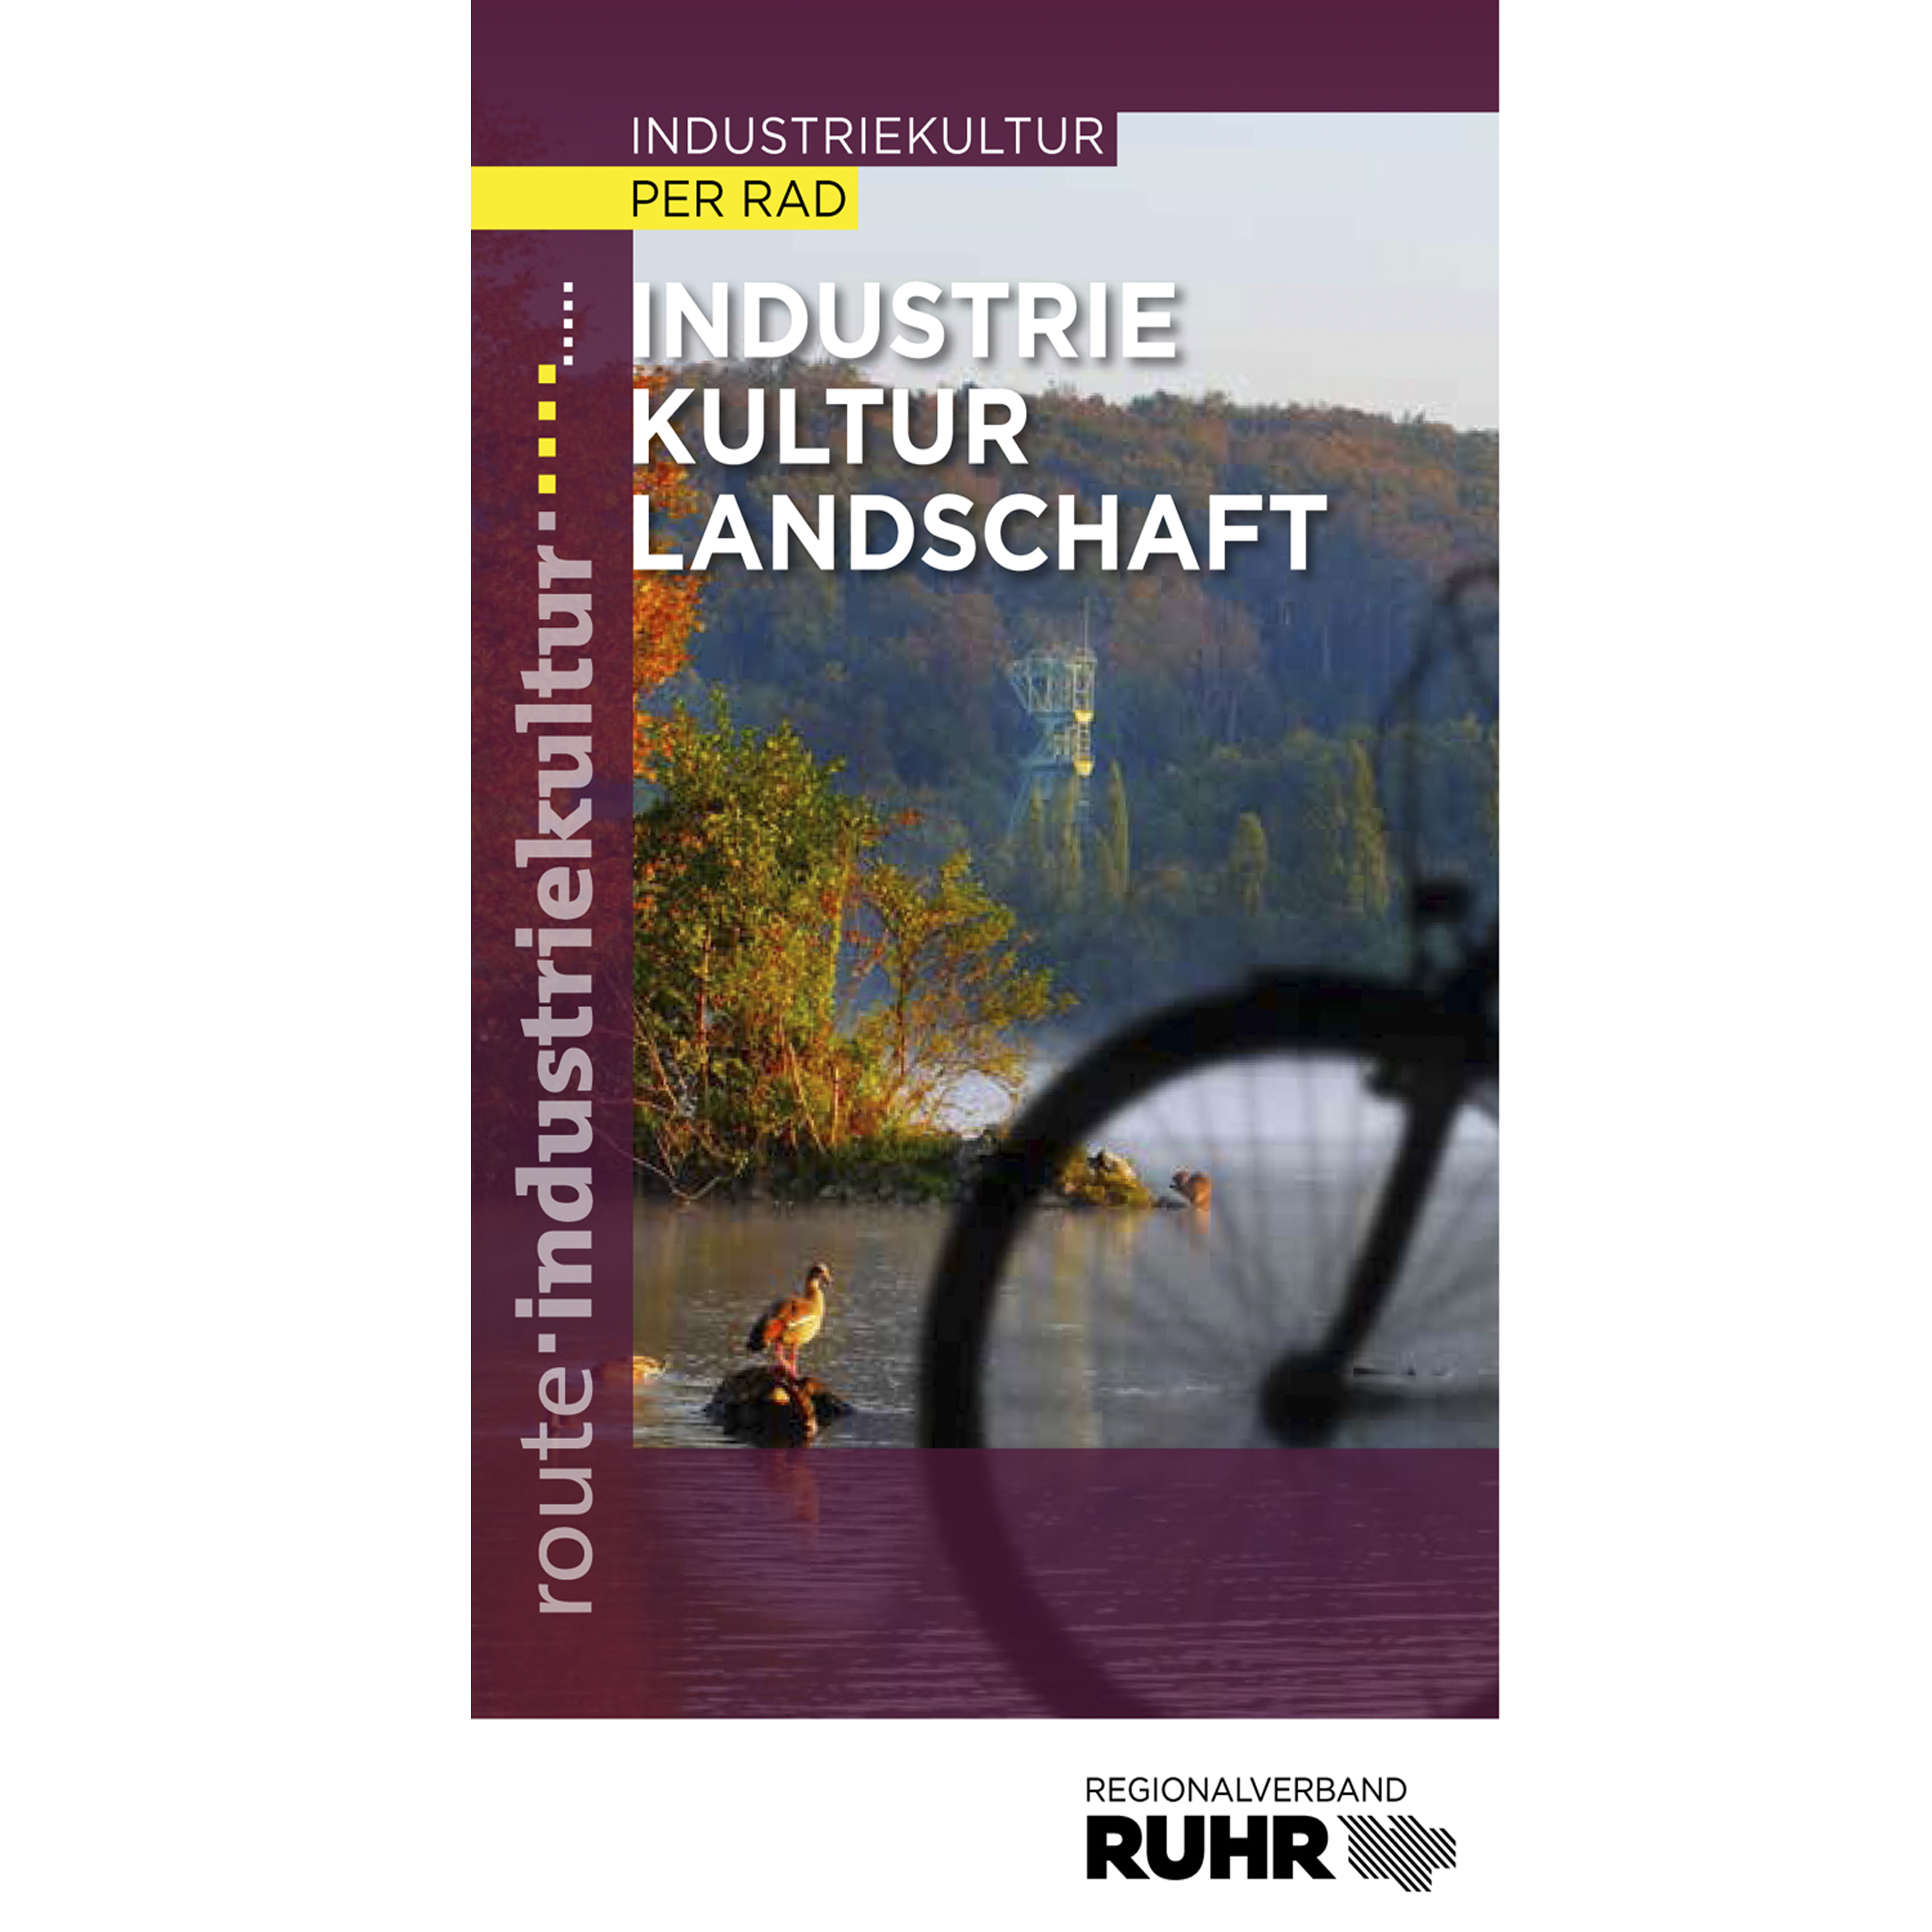 Die Broschüre "Industriekultur per Rad" liefert einen Überblick über die Route per Rad.